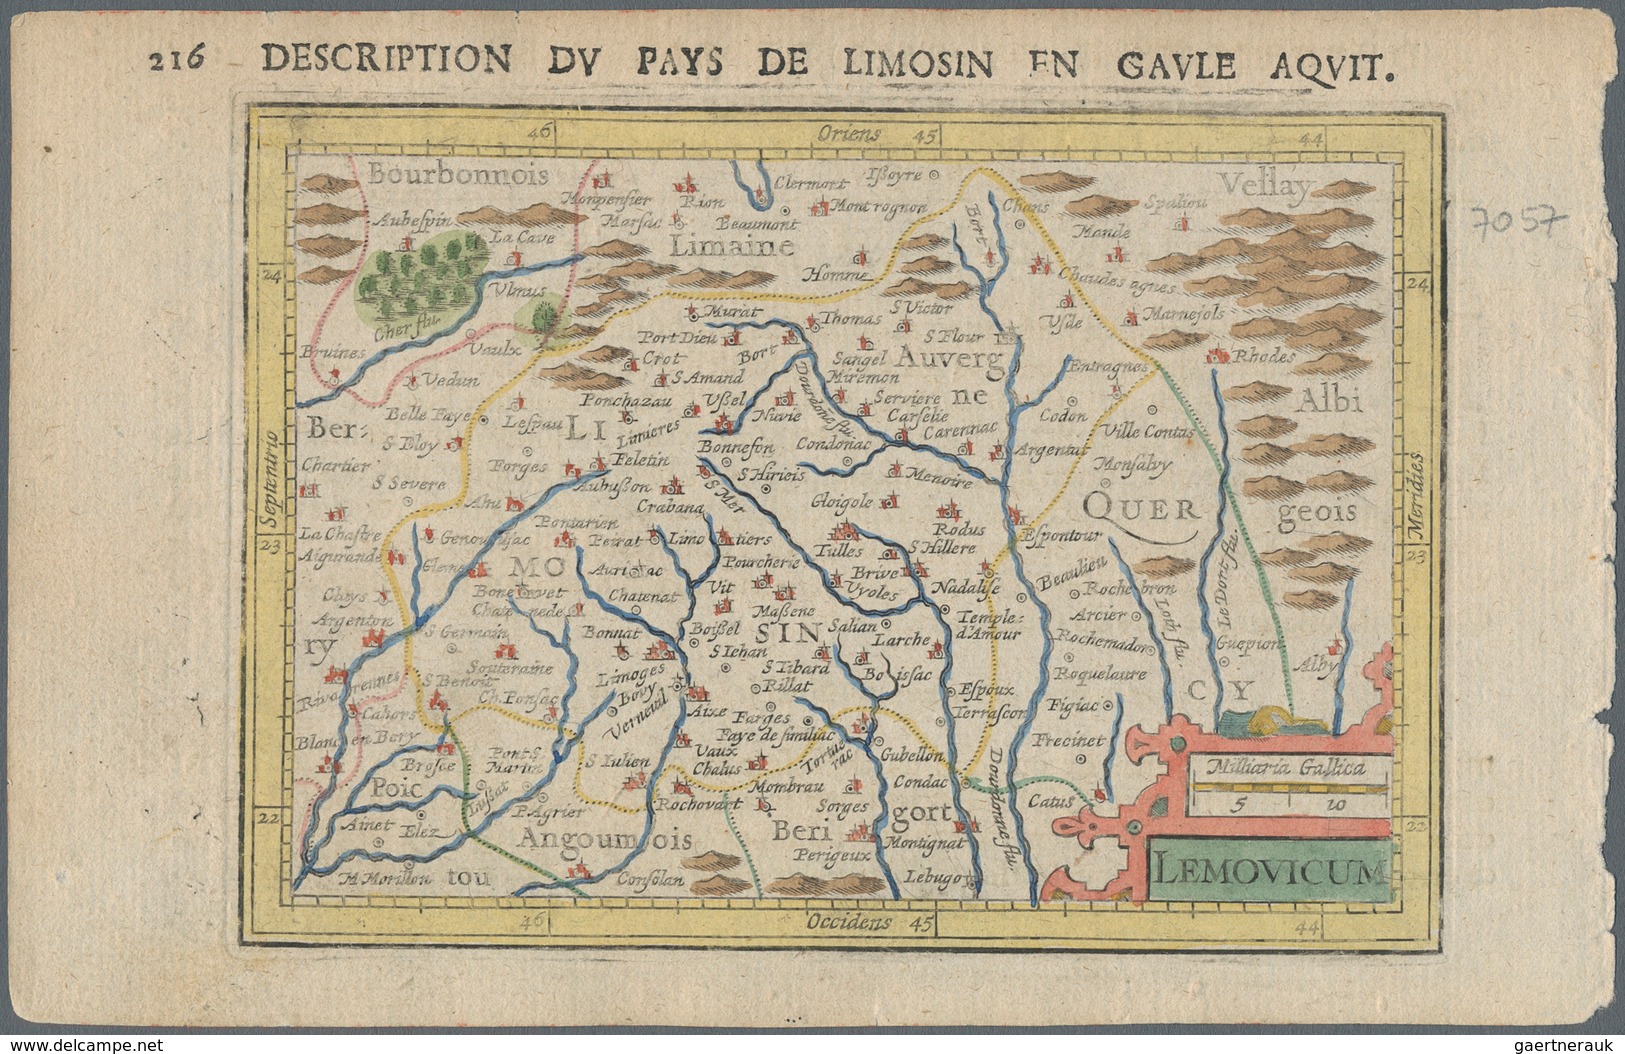 Landkarten Und Stiche: 1610. Lemovicum, Description Du Pays De Limosin En Gaule Aquit. Attractive Sm - Geographie